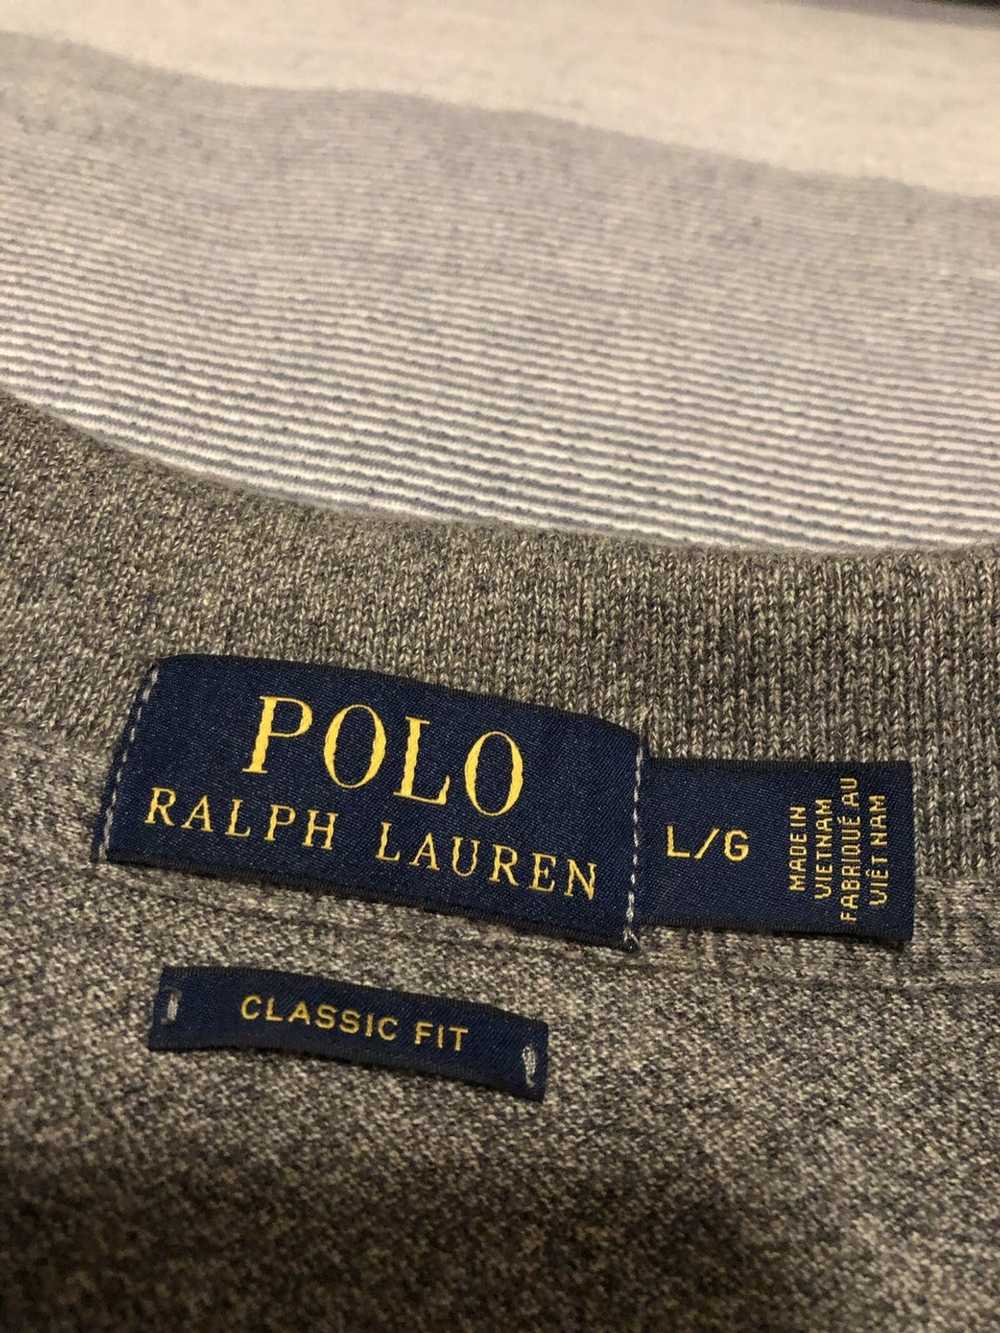 Polo Ralph Lauren Polo Ralph Lauren Polo Shirt - image 3